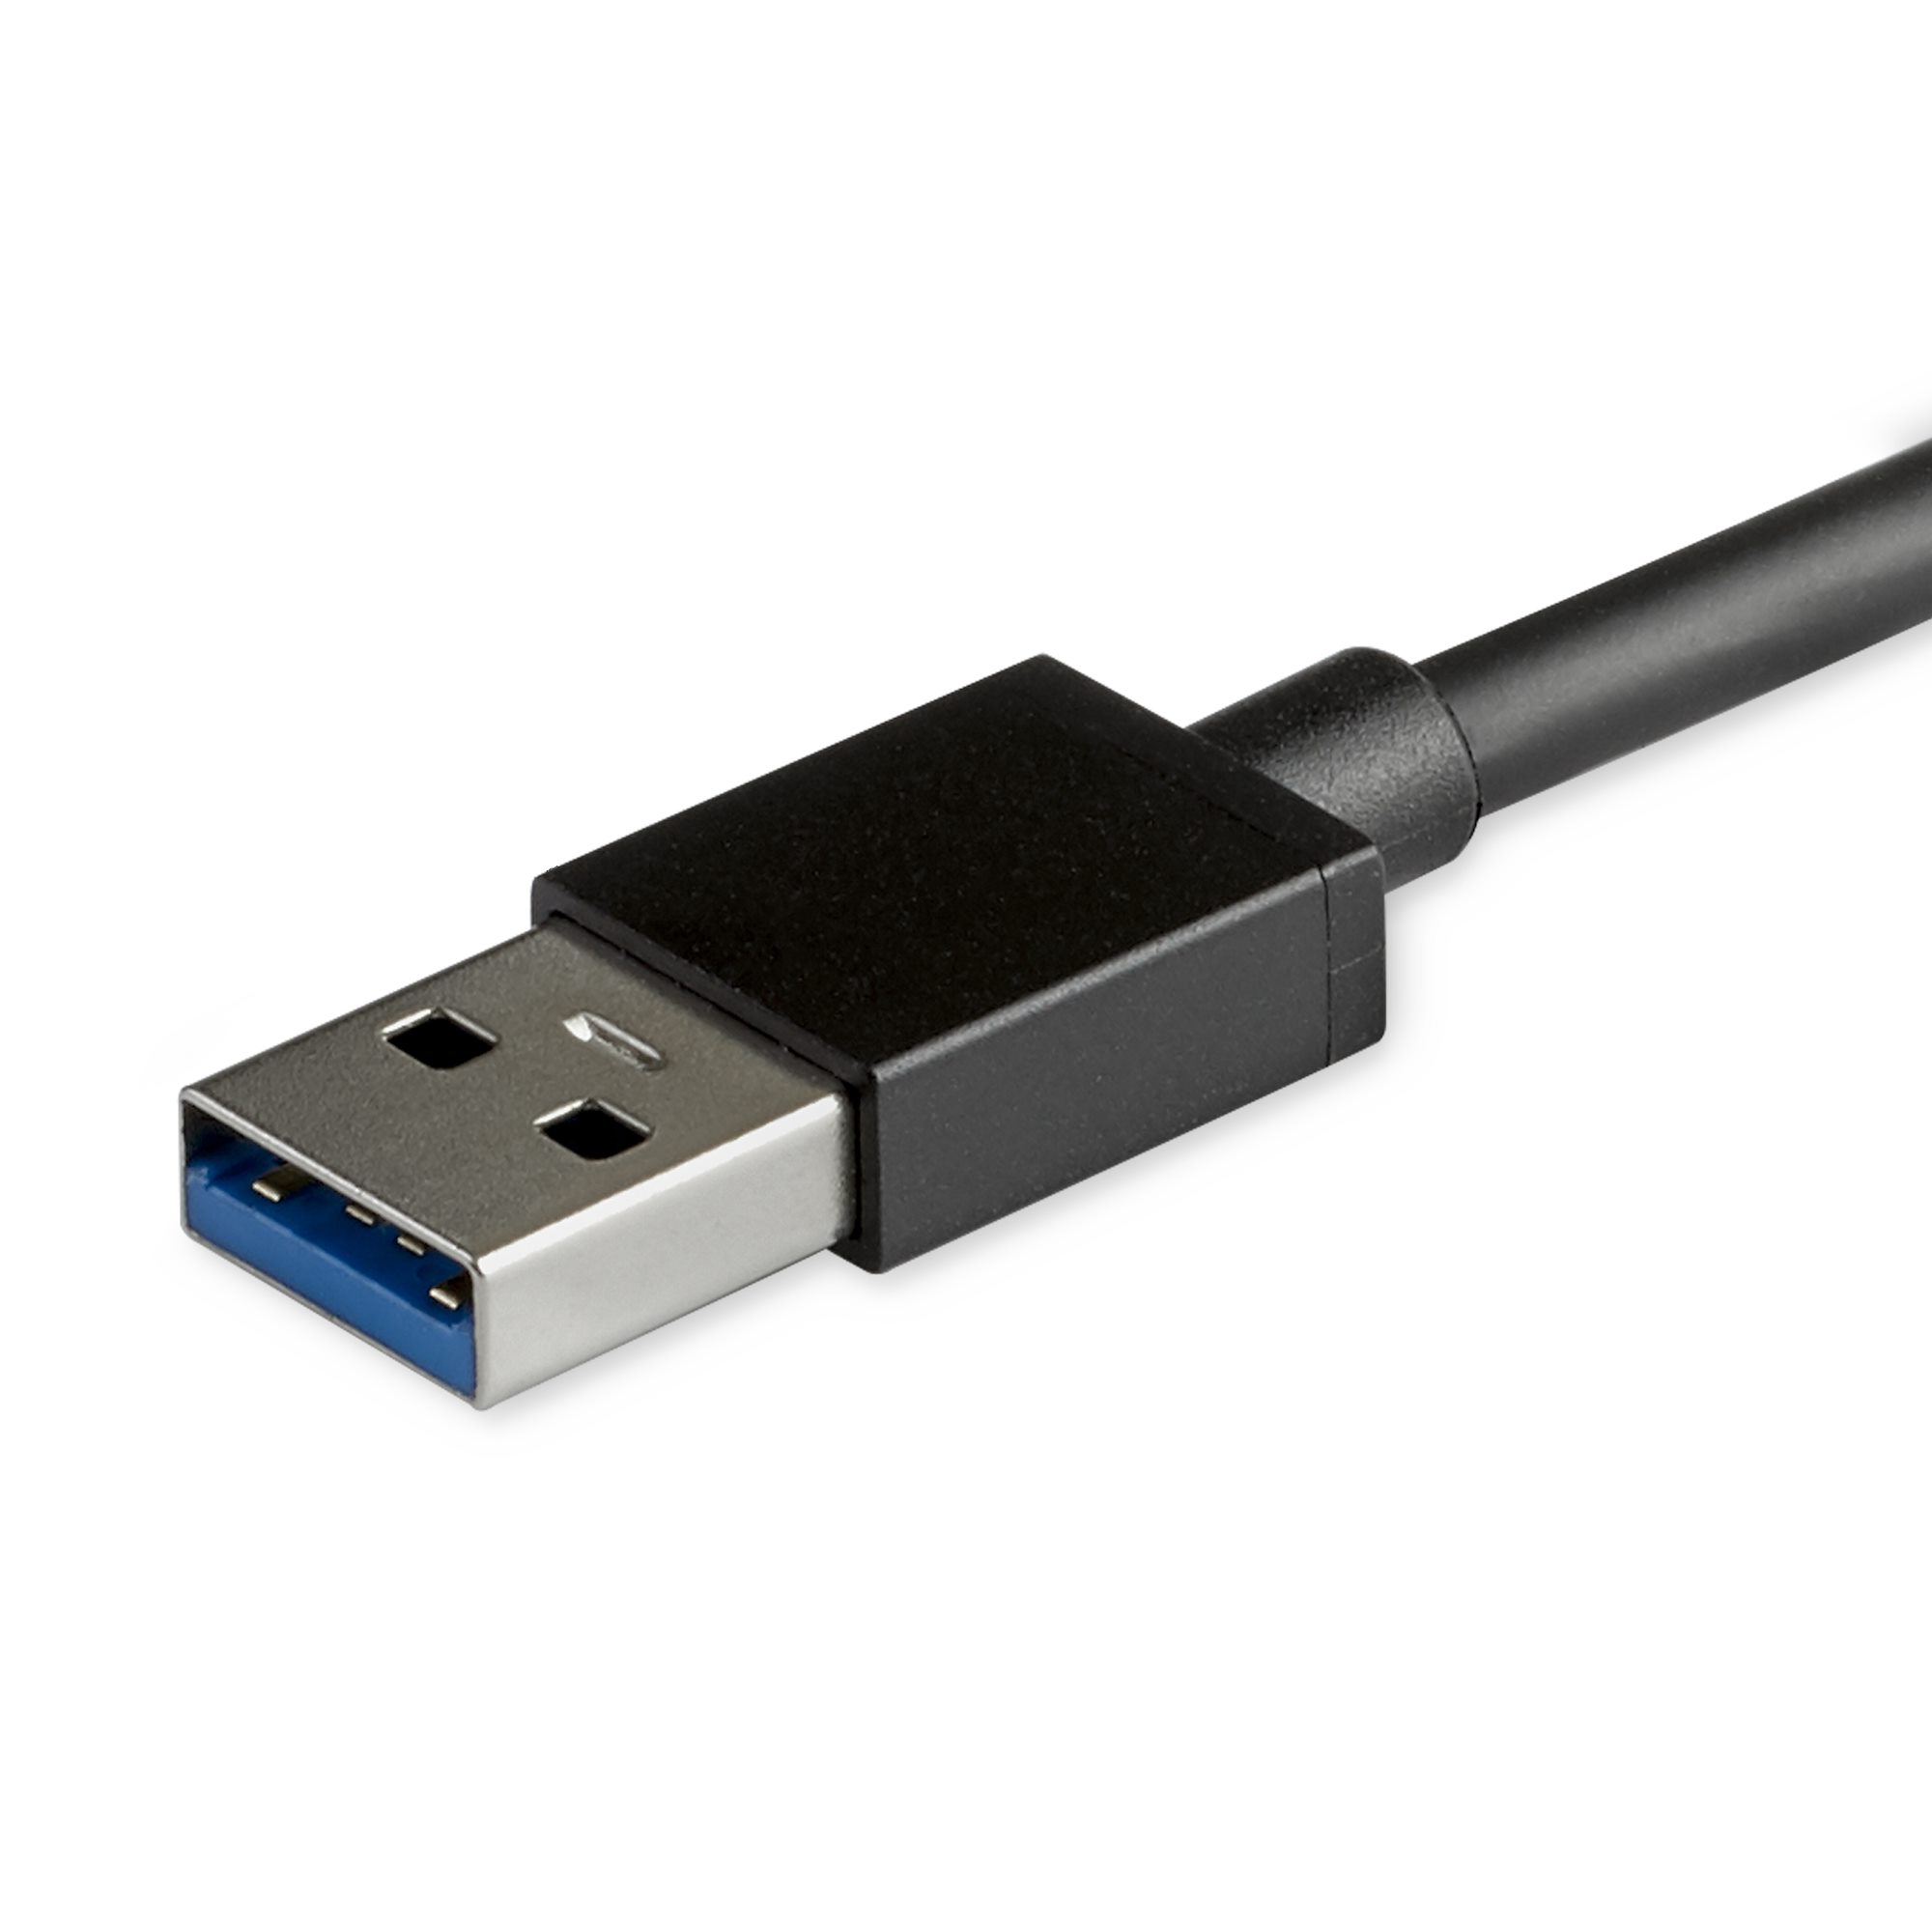 StarTech.com USB 3.0ハブ USB-Aポートを4口搭載 各ポートごとにオン/オフ・スイッチ付き バスパワー対応USBポート  U6zoUa1zWG, スマホ、タブレット、パソコン - urbanoeng.com.br